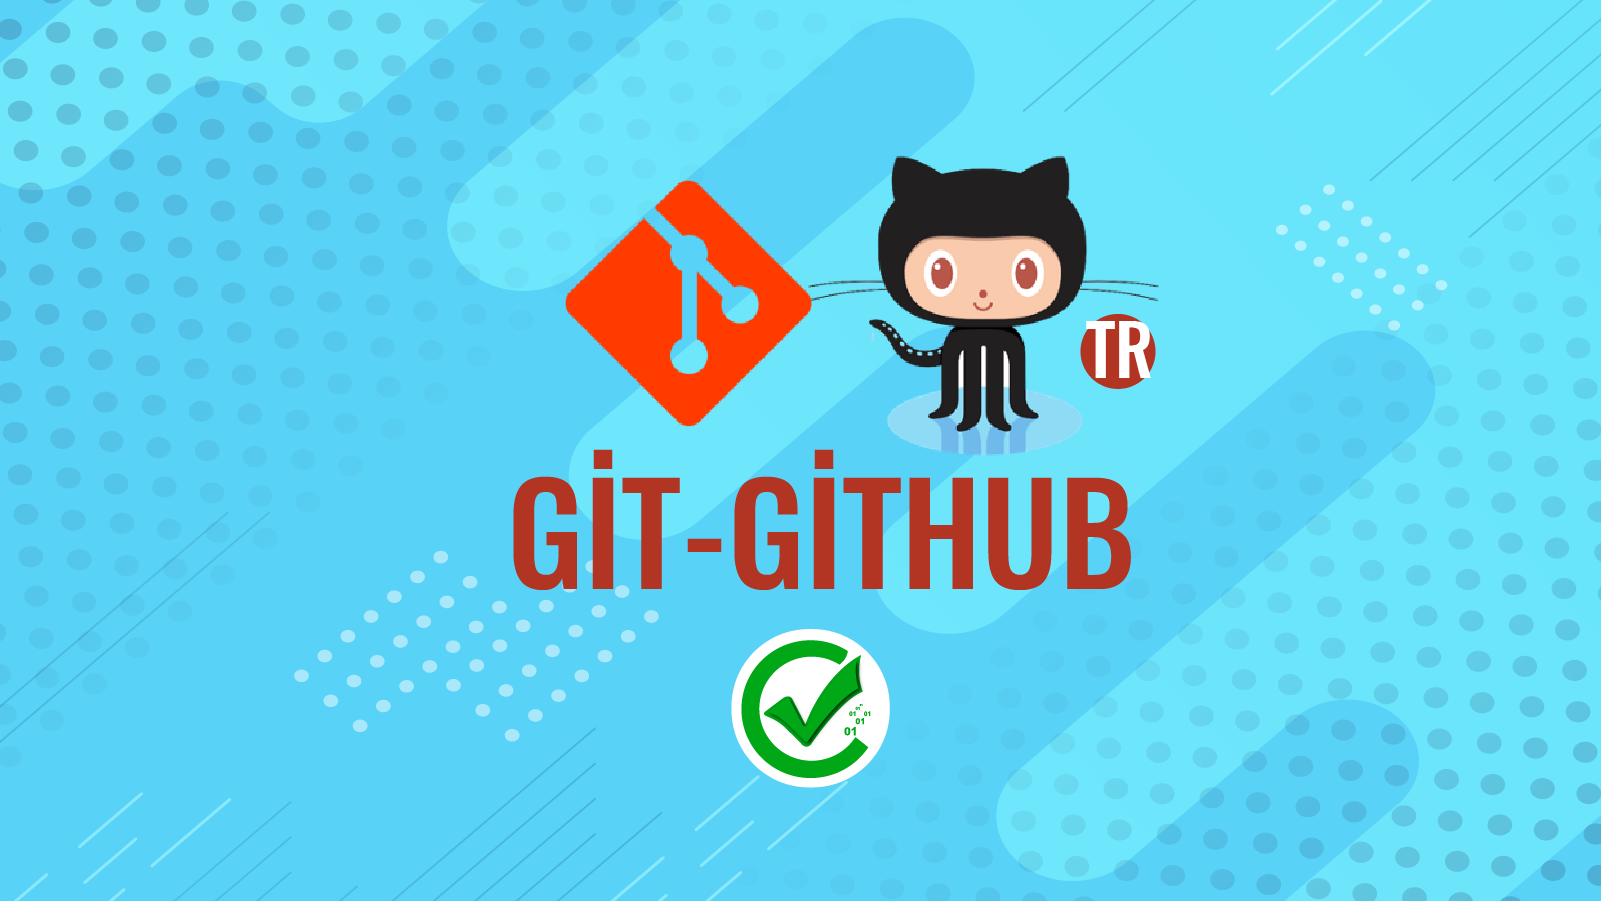 Git-Github 115